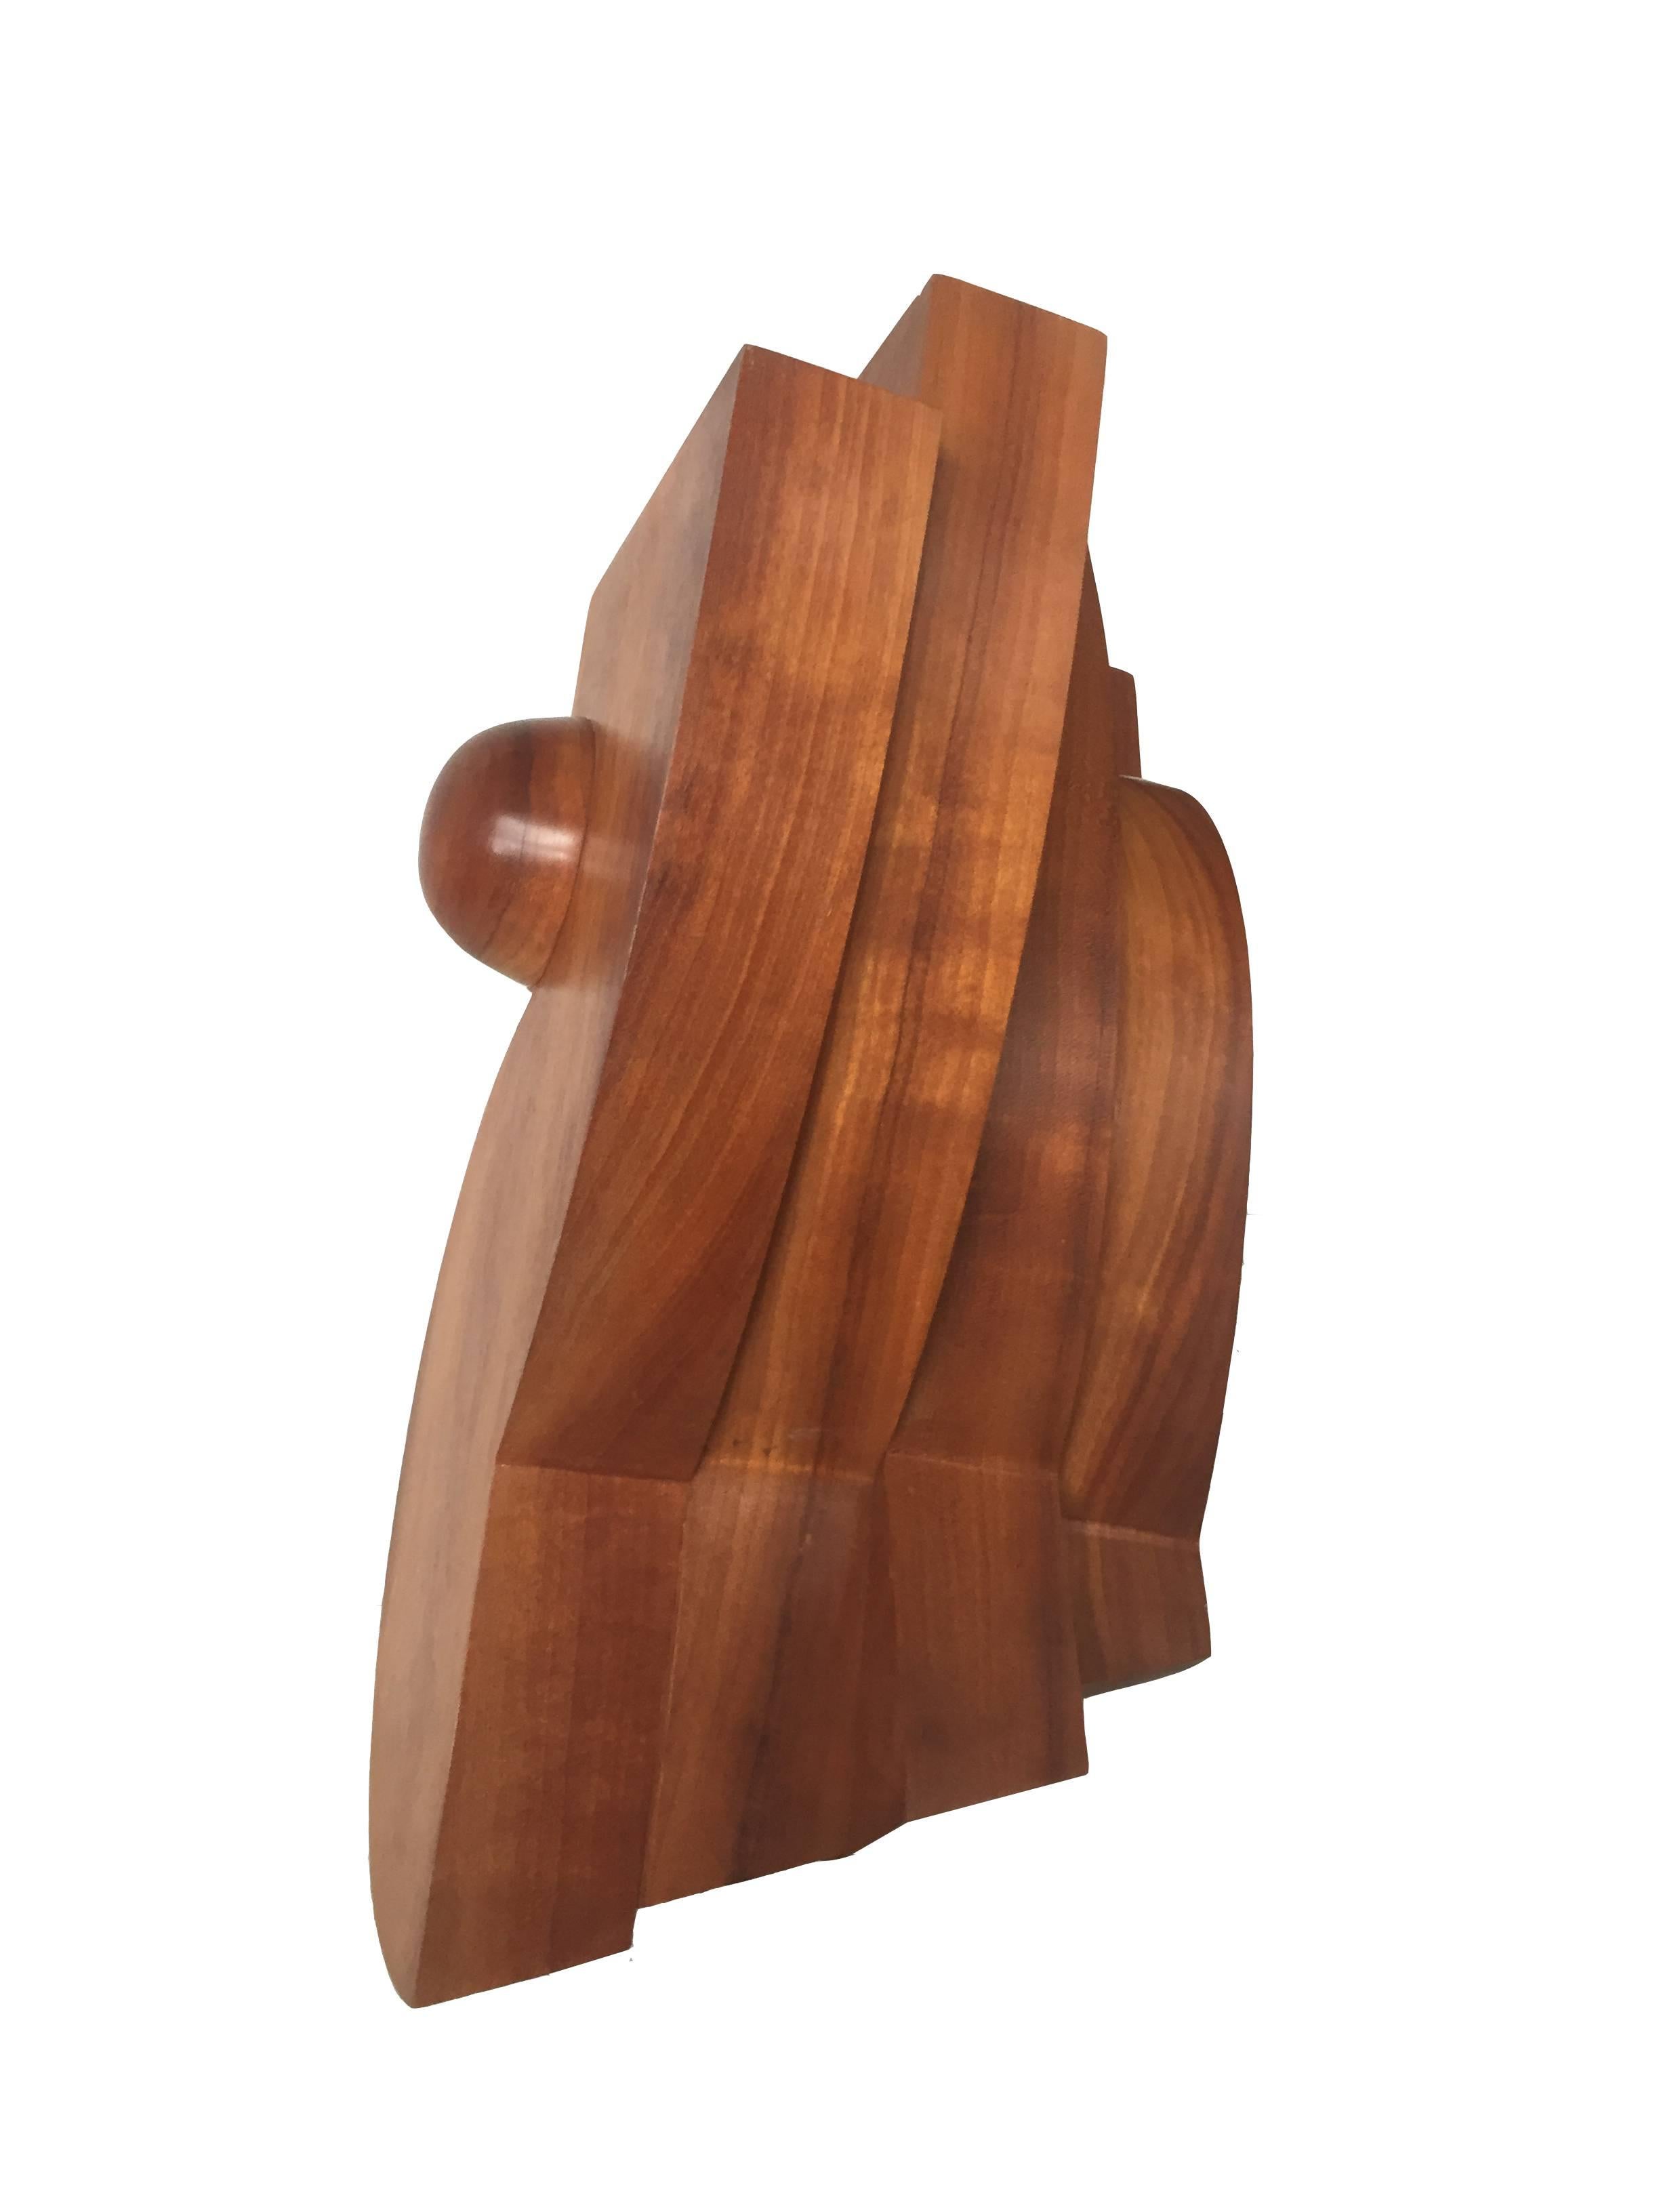 modern wood sculpture